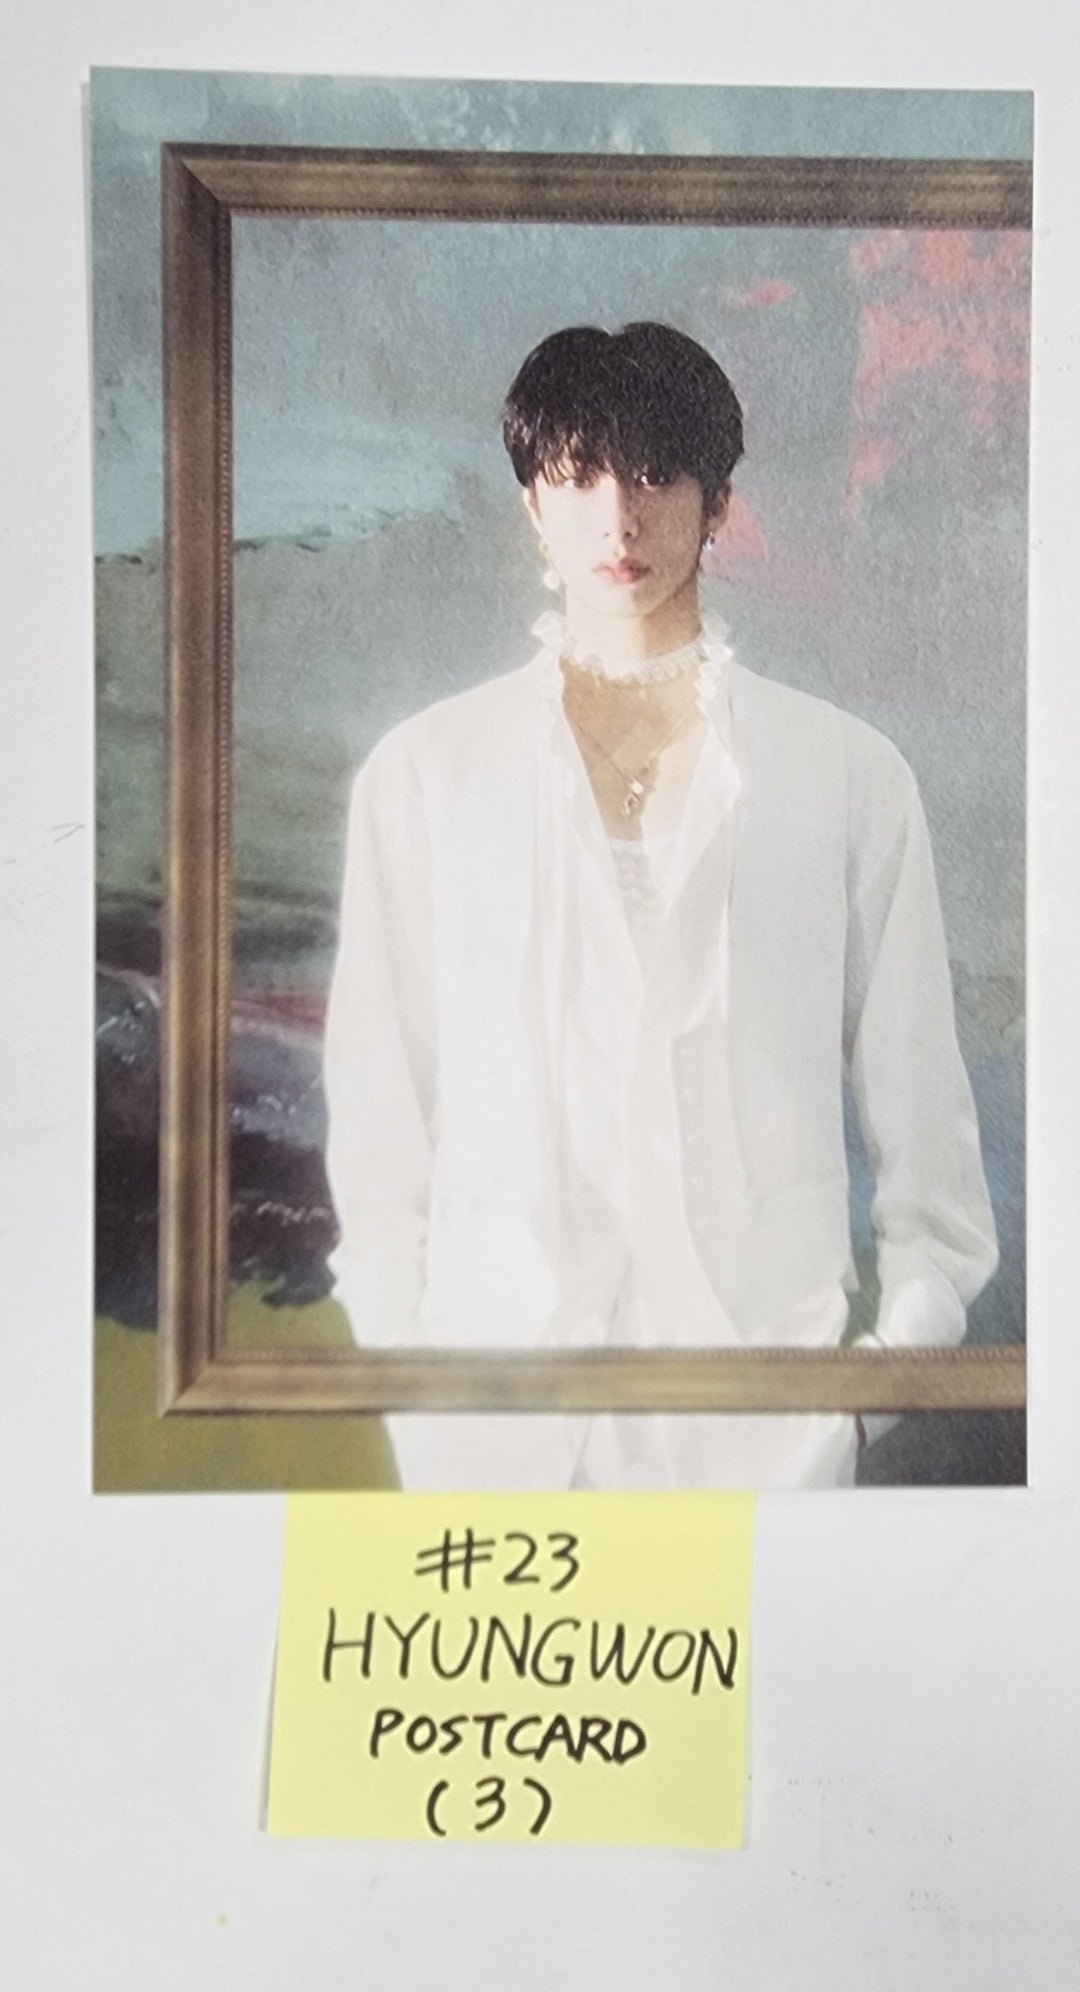 몬스타엑스 "REASON" - 오피셜 포토카드, 엽서, 4컷 포토